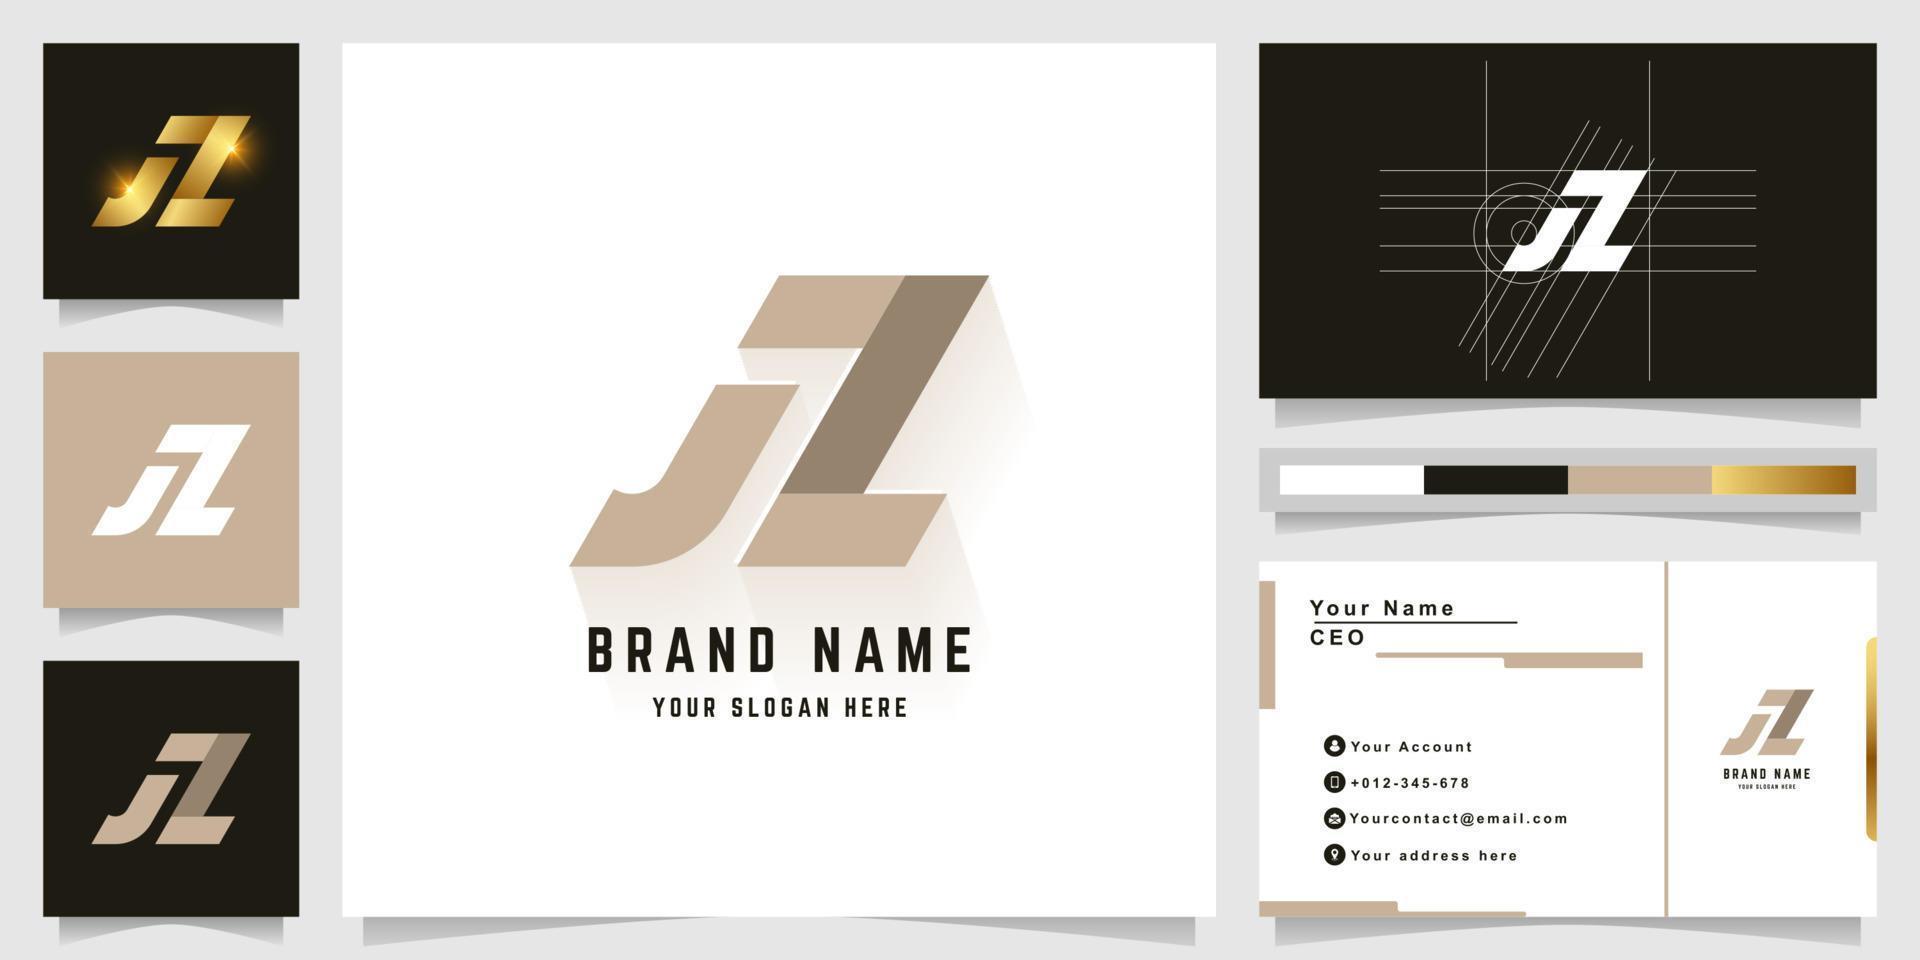 Letter JZ or JL monogram logo with business card design vector